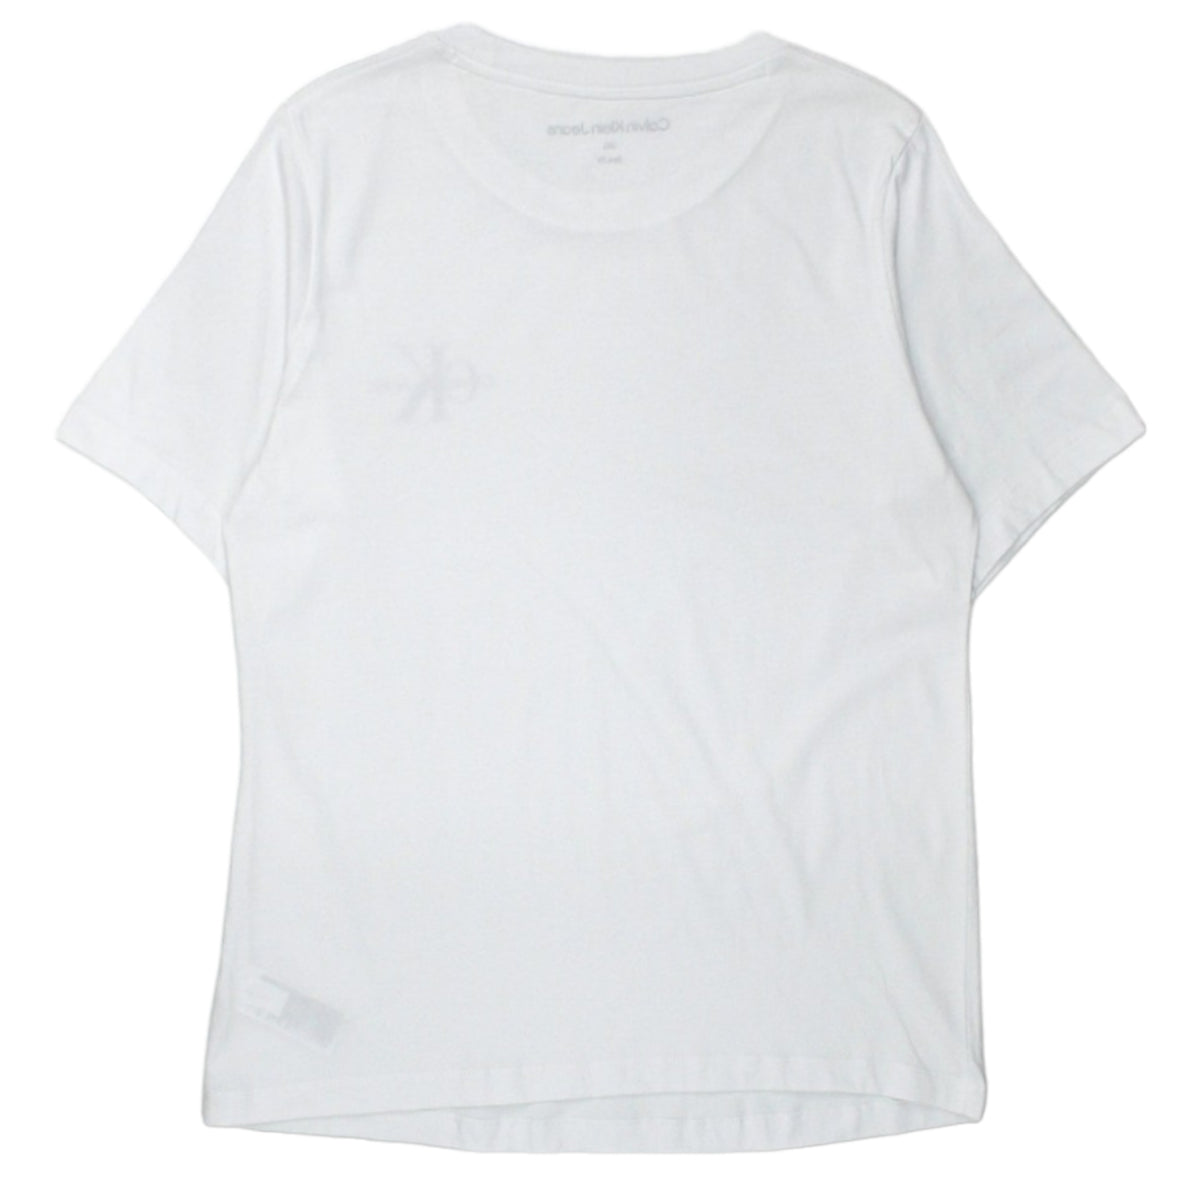 Calvin Klein Jeans White Logo Tee